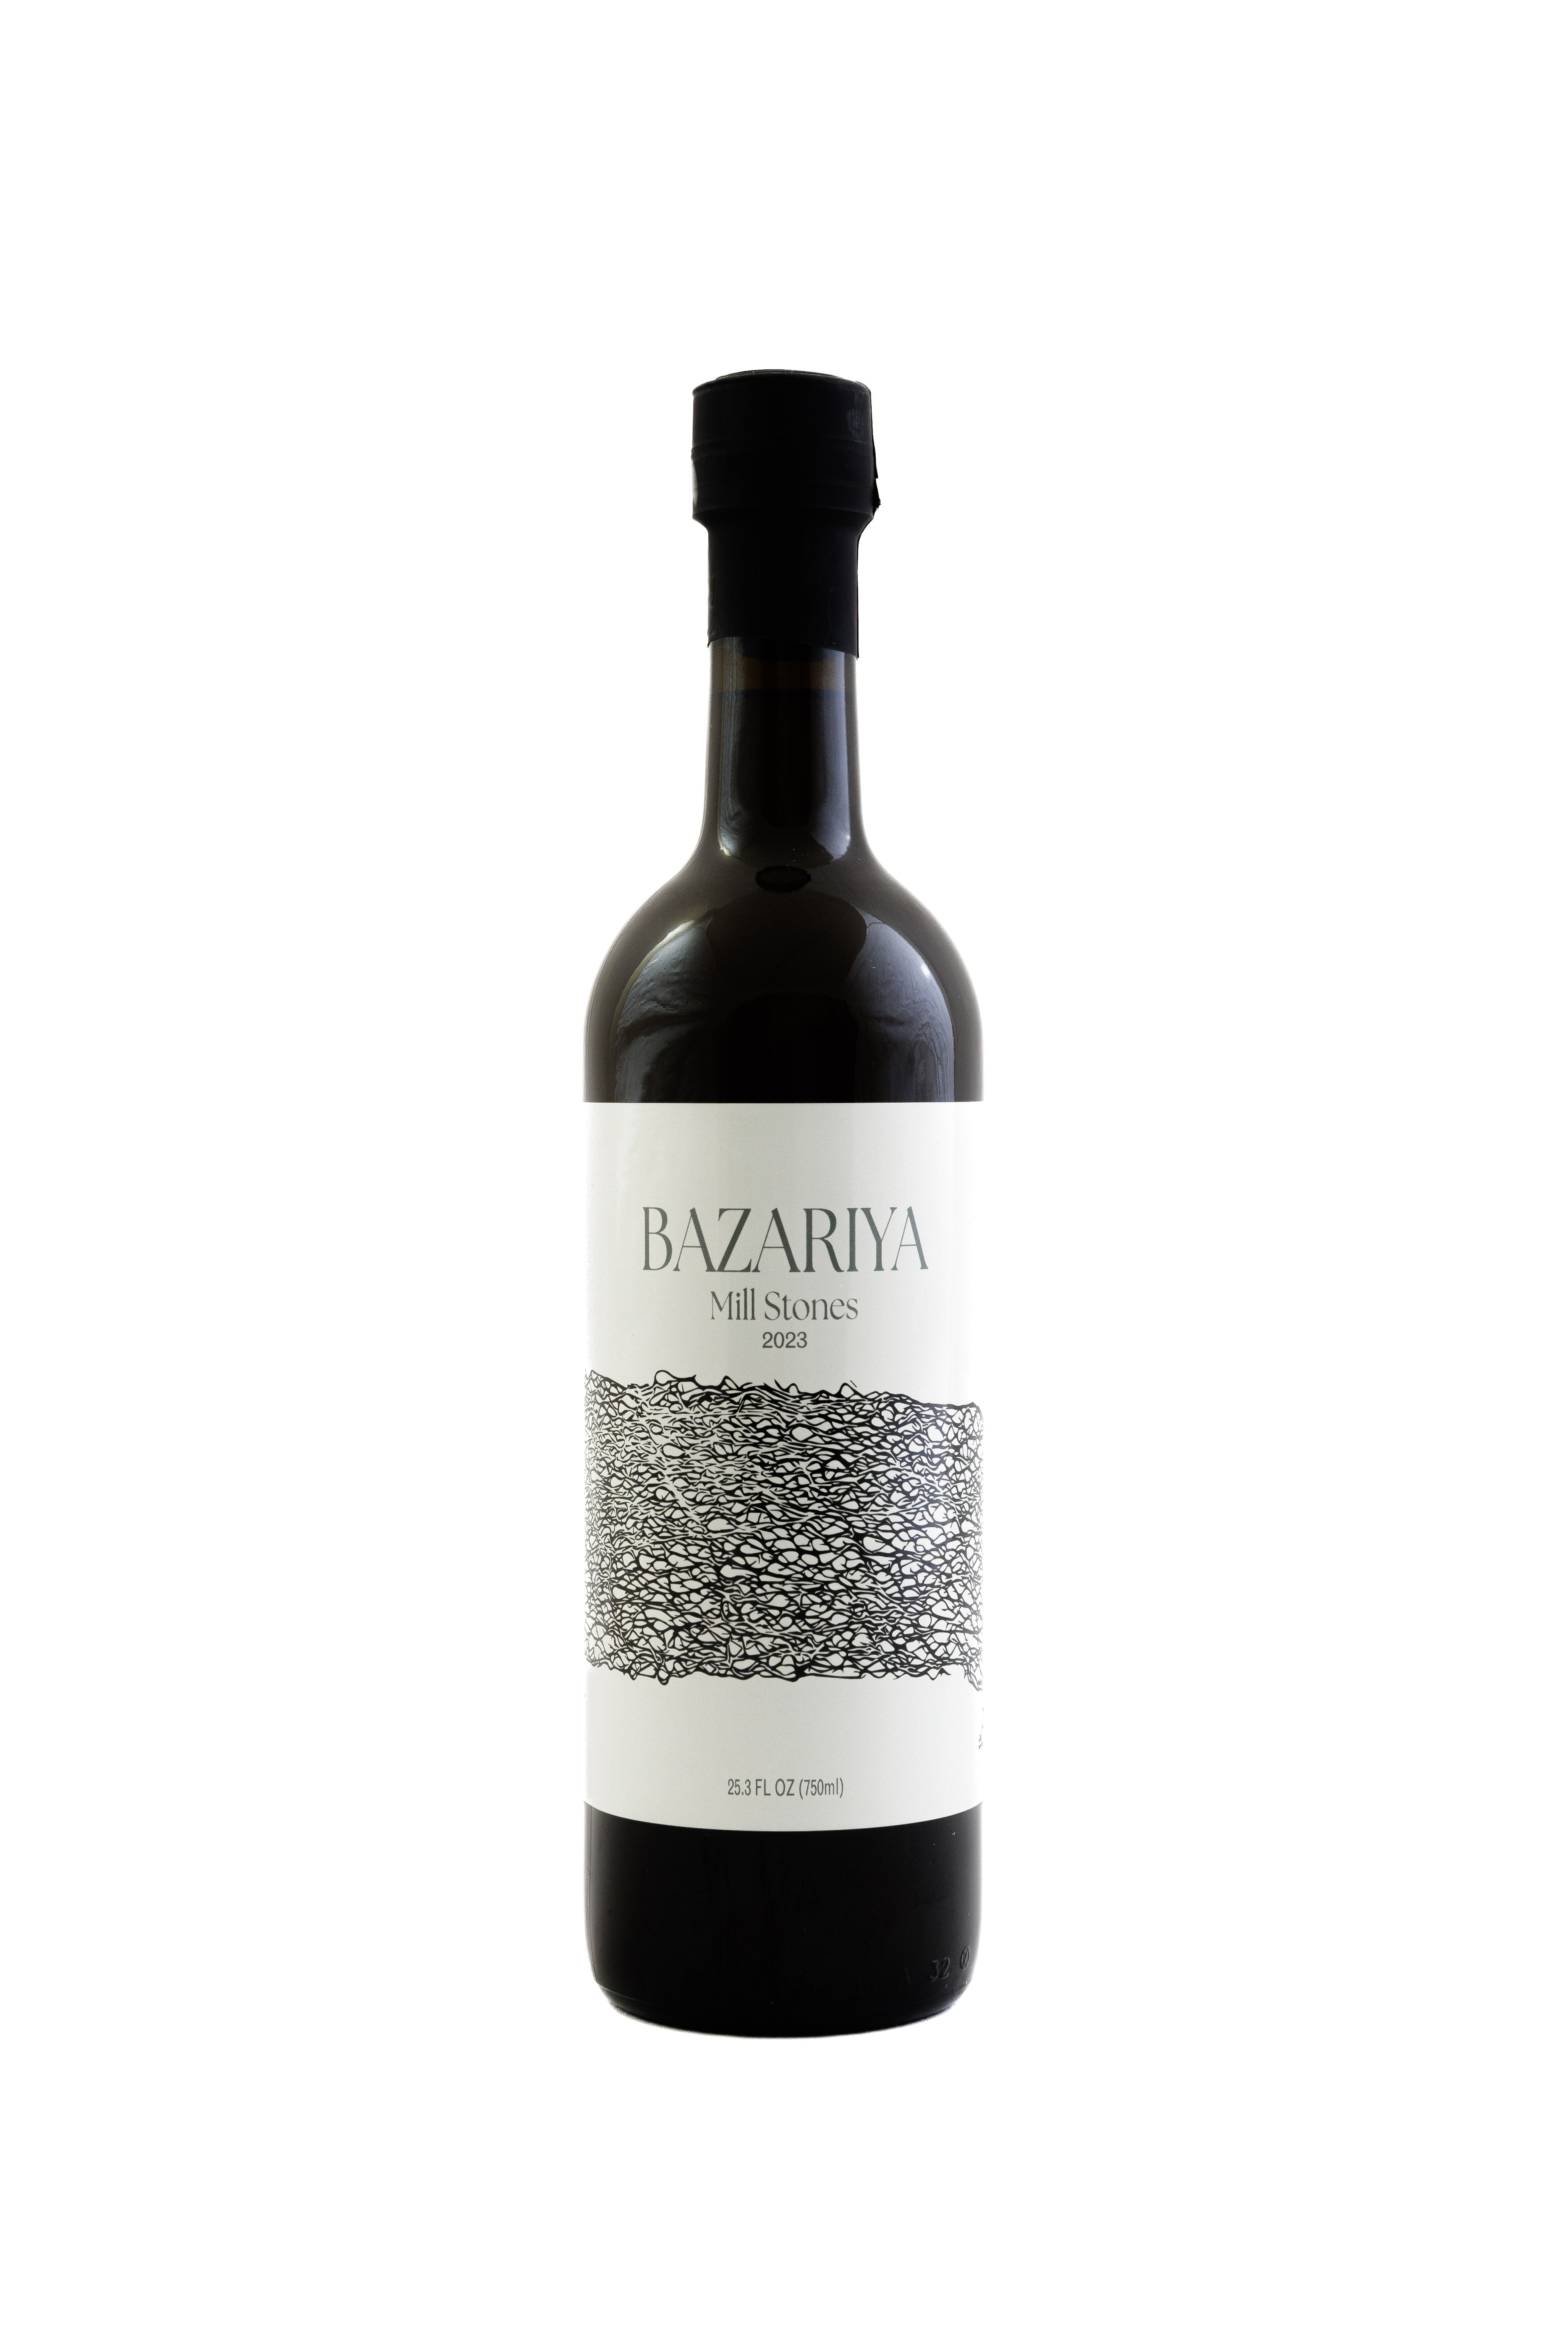 Bazariyas Millstone-extrahiertes Olivenöl – aromatisch, pikant und fruchtig [Erntejahr: 2023]